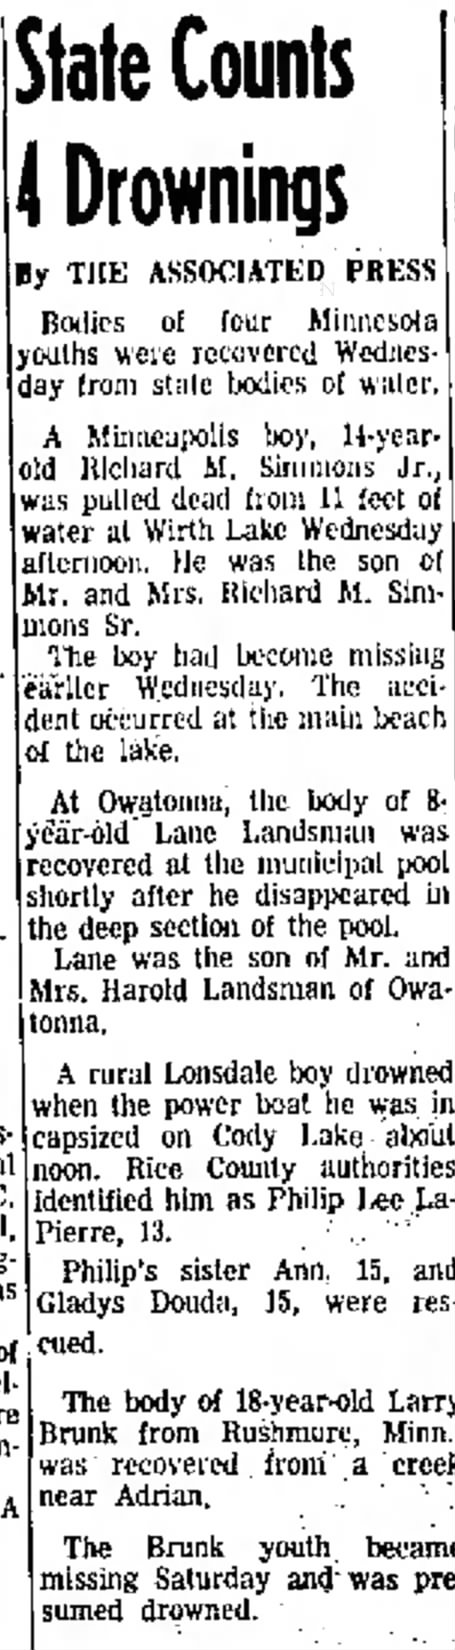 Lane Landsman drowning in municipal pool